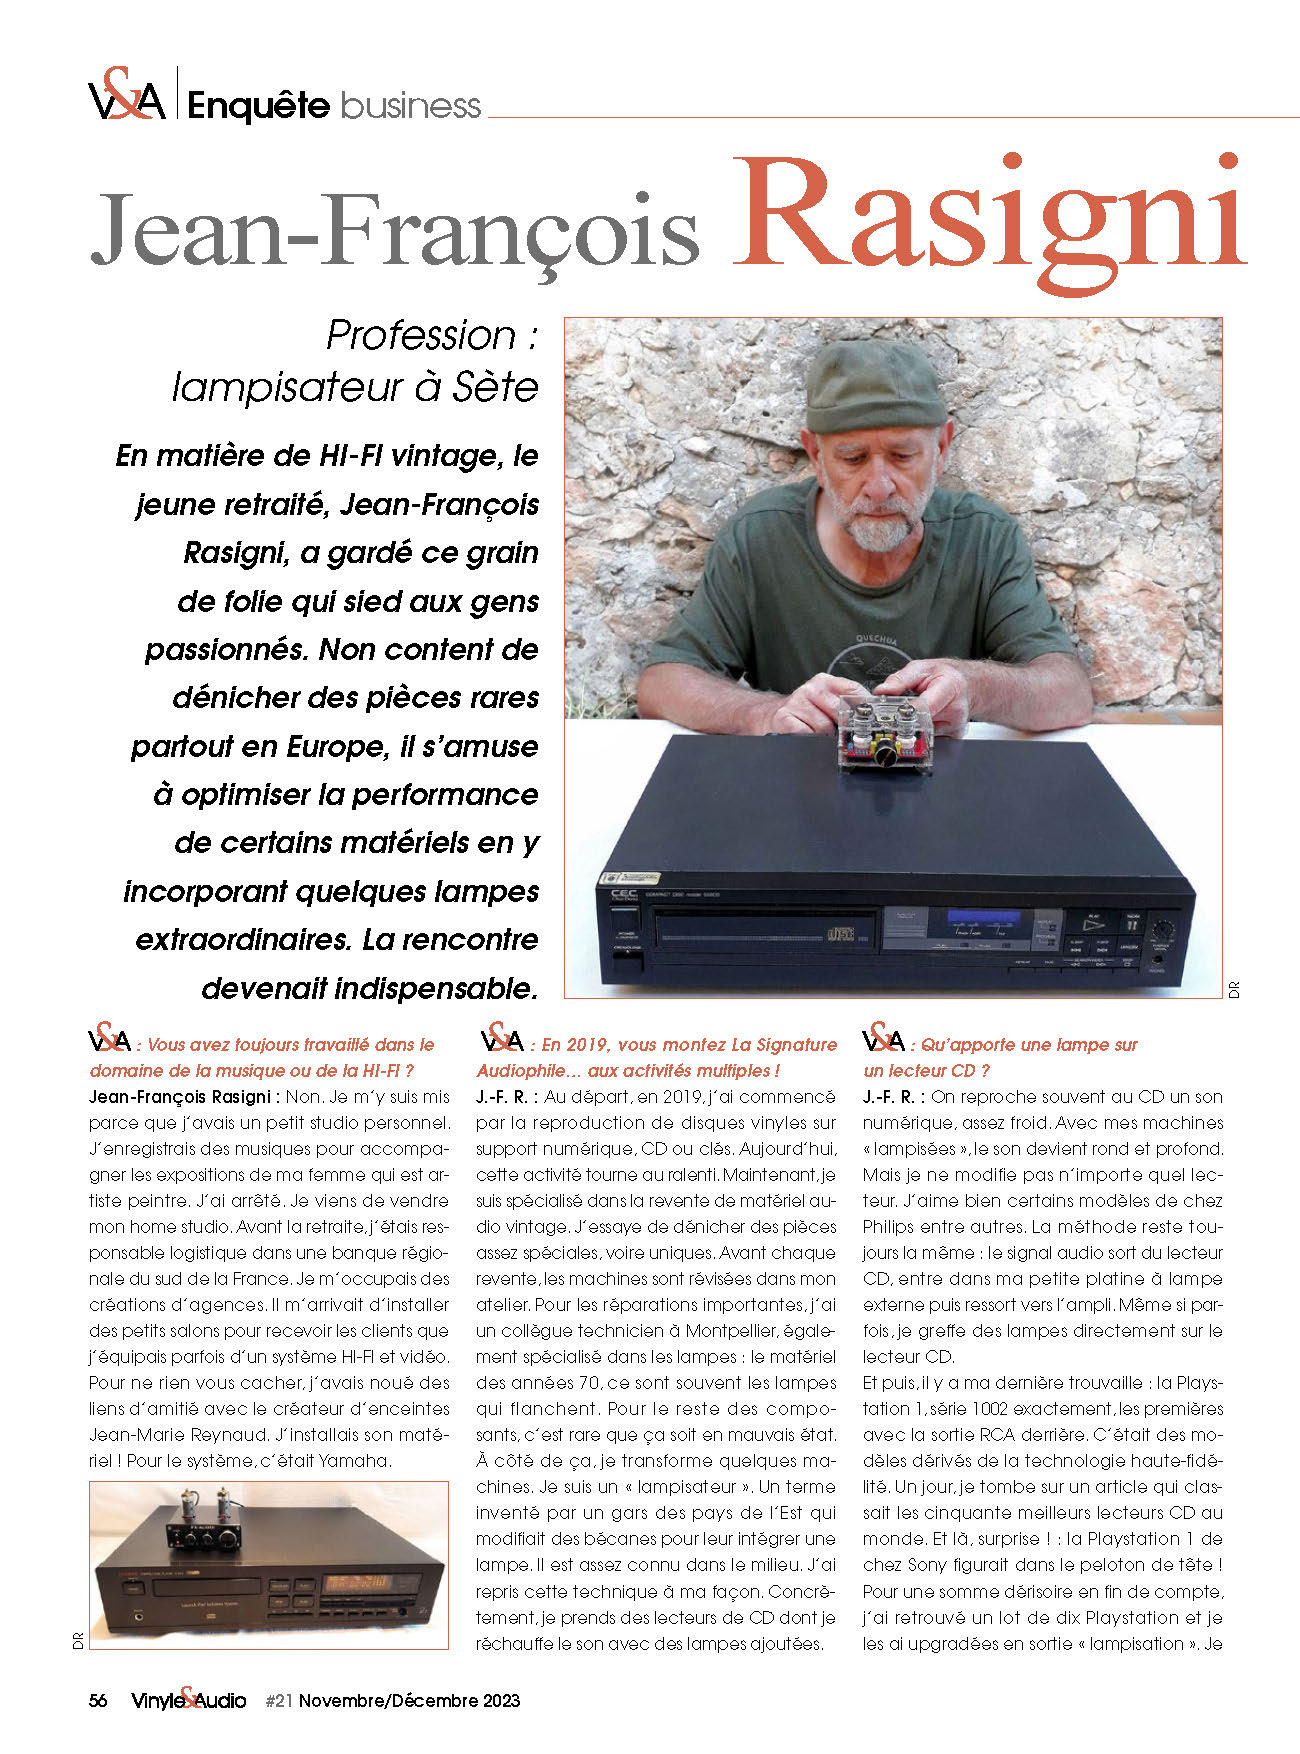 Enquête business : Jean-François Rasigni, lampisateur à Sète